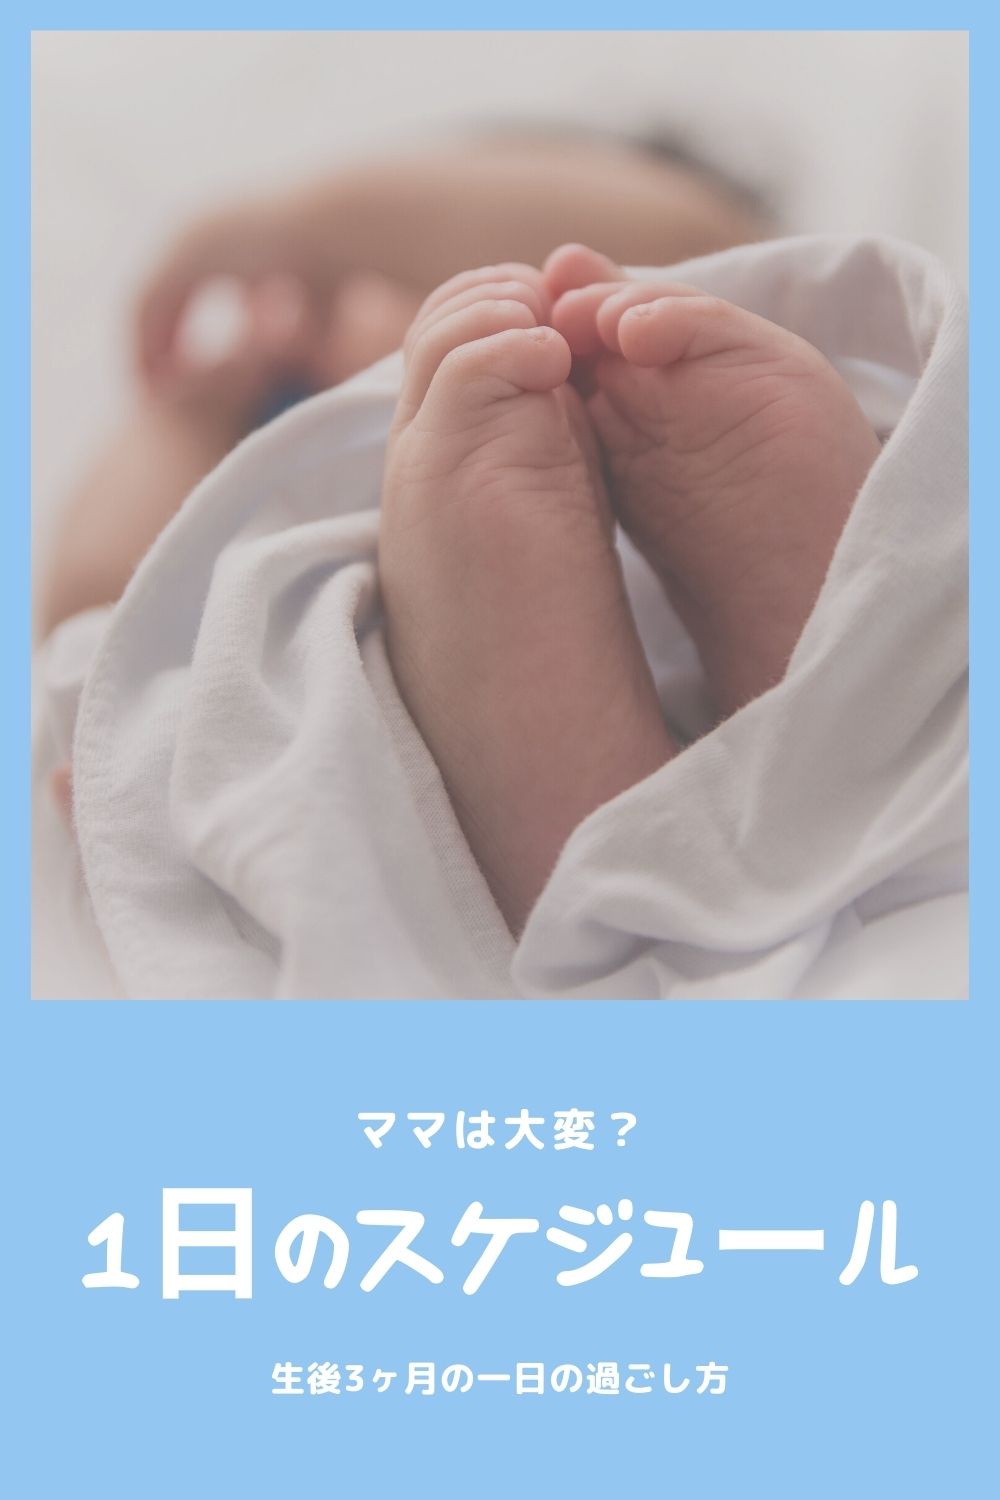 生後3ヶ月の一日の過ごし方 赤ちゃんと平日 休日のスケジュール オクラ遥ブログ